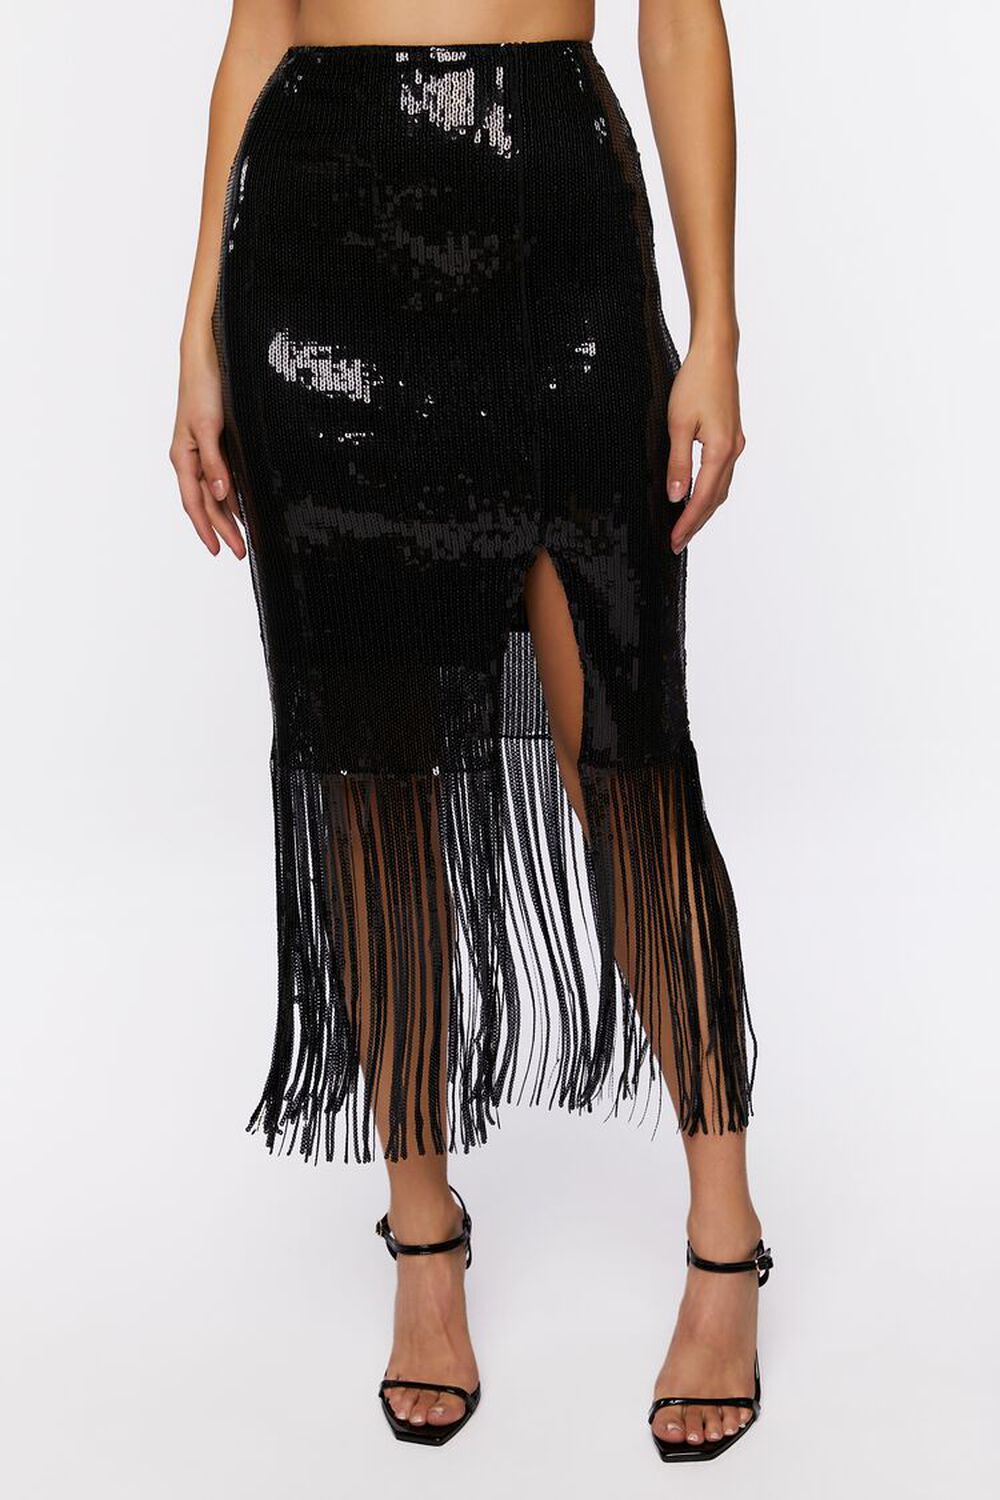 BLACK Sequin Fringe Midi Skirt, image 2